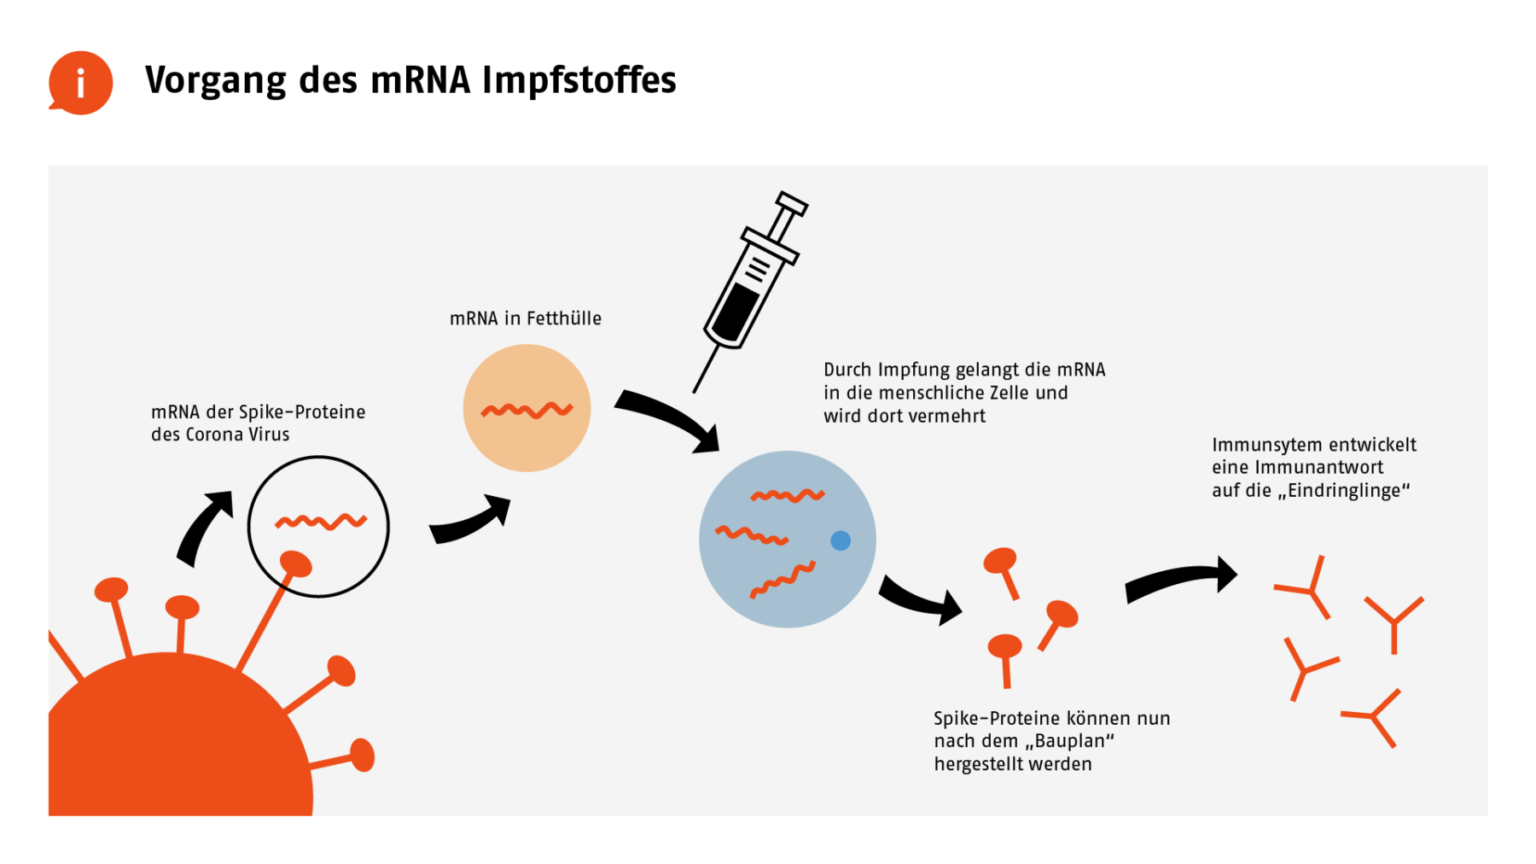 Schaubild zur Funktionsweise von mRNA Impfstoffen